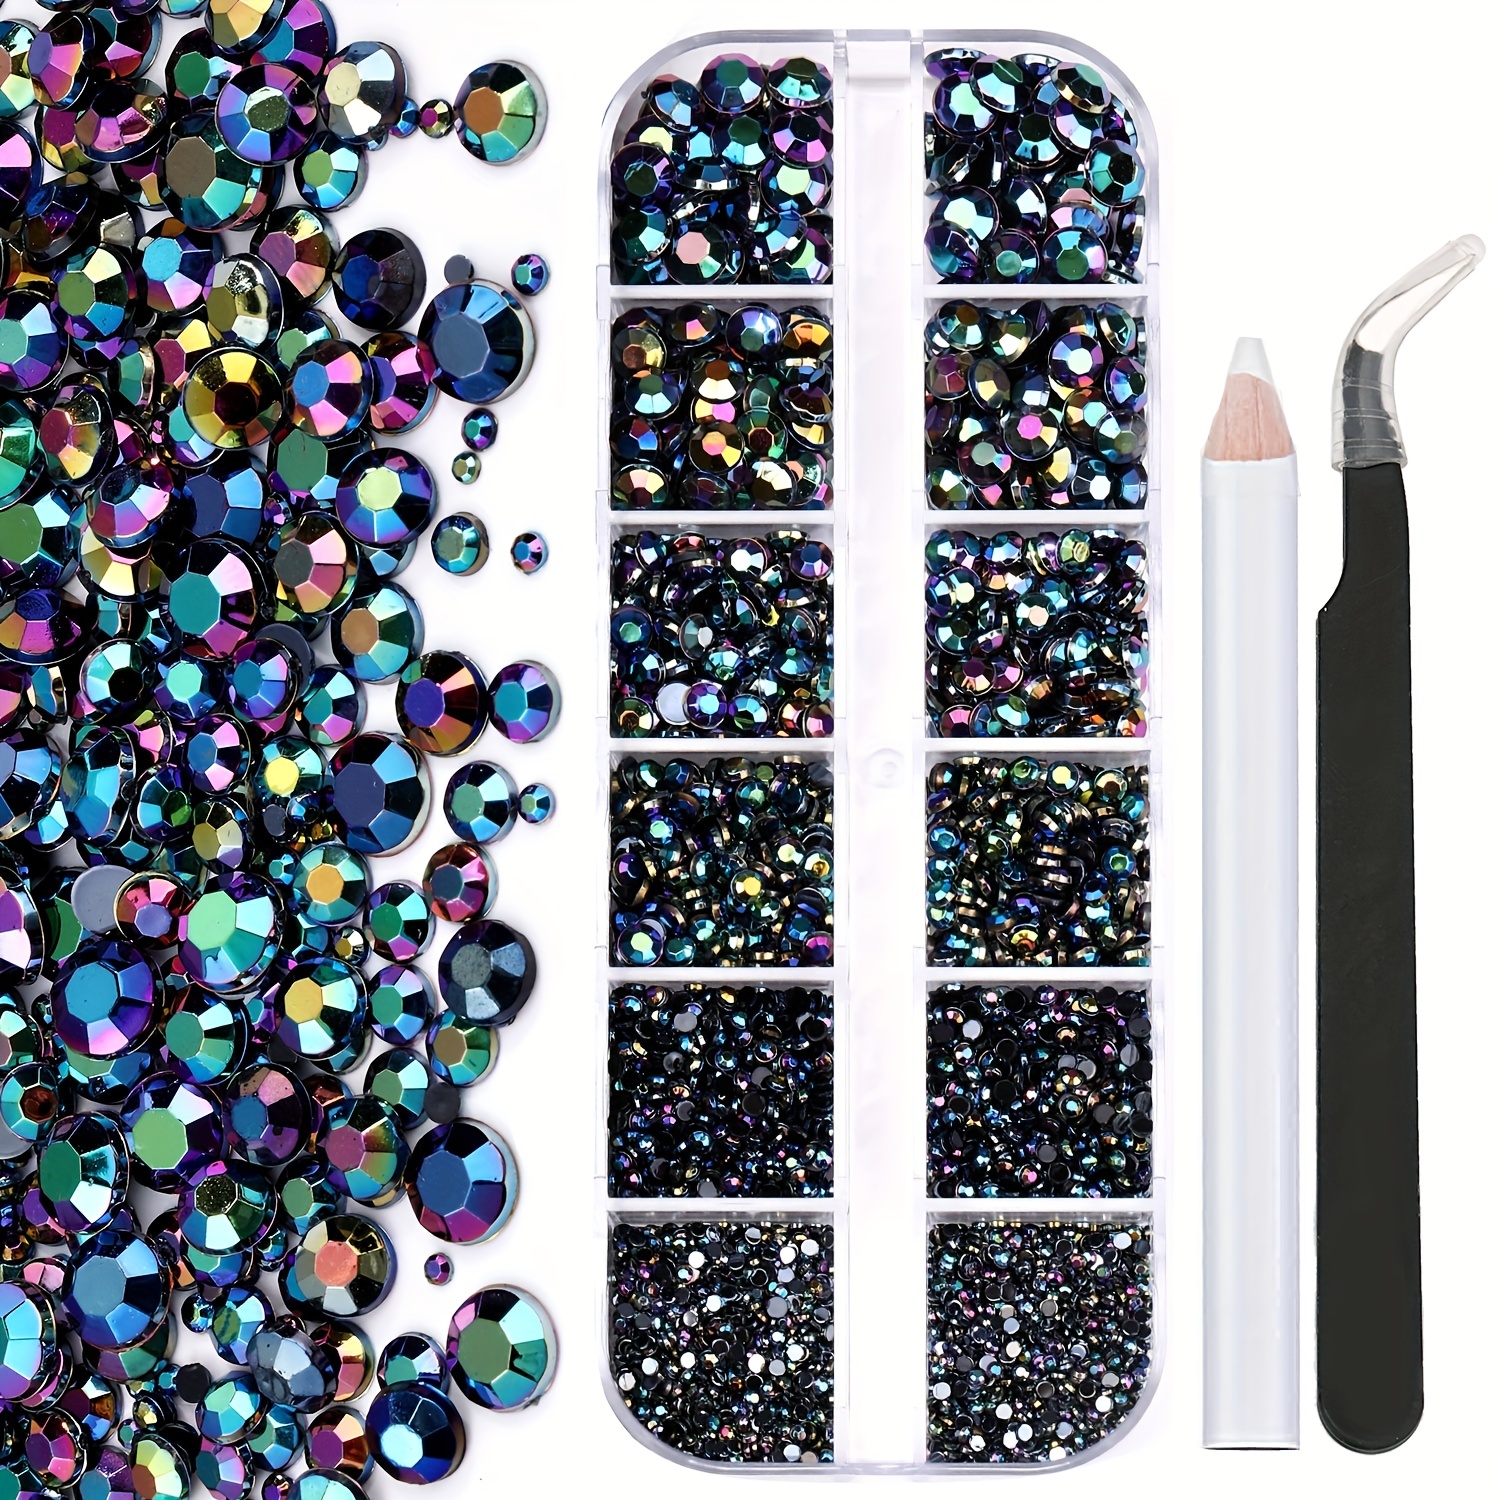 2500pcs Nail Rhinestones Kit Boxed 21 Grids Set 1pc Pick Up Pen Glass  Crystal US